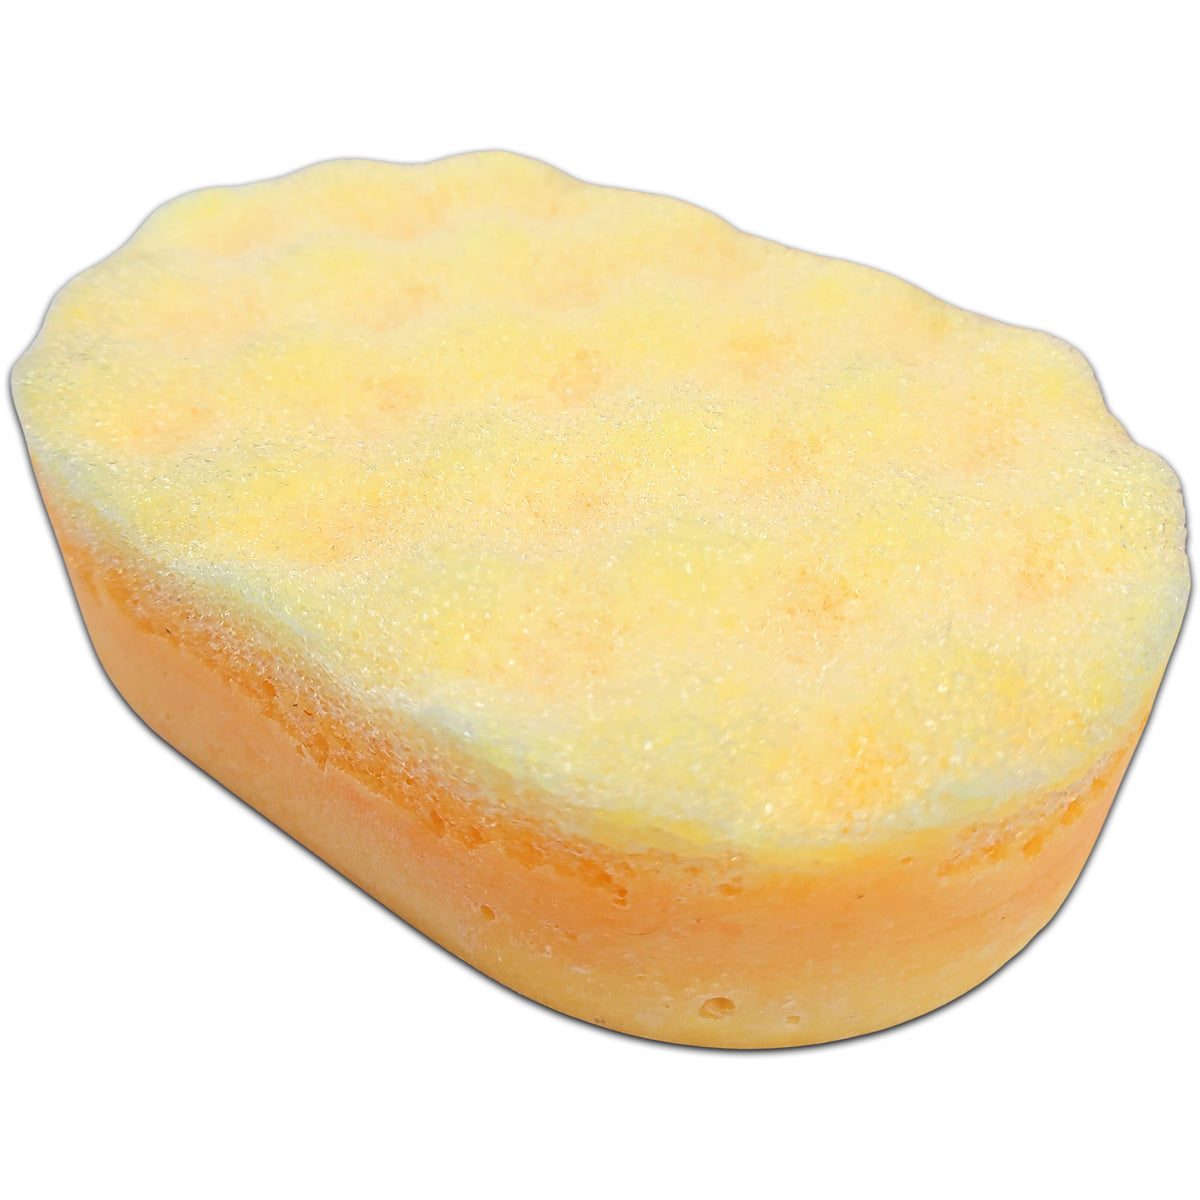 Lady Millionaire Soap Sponges